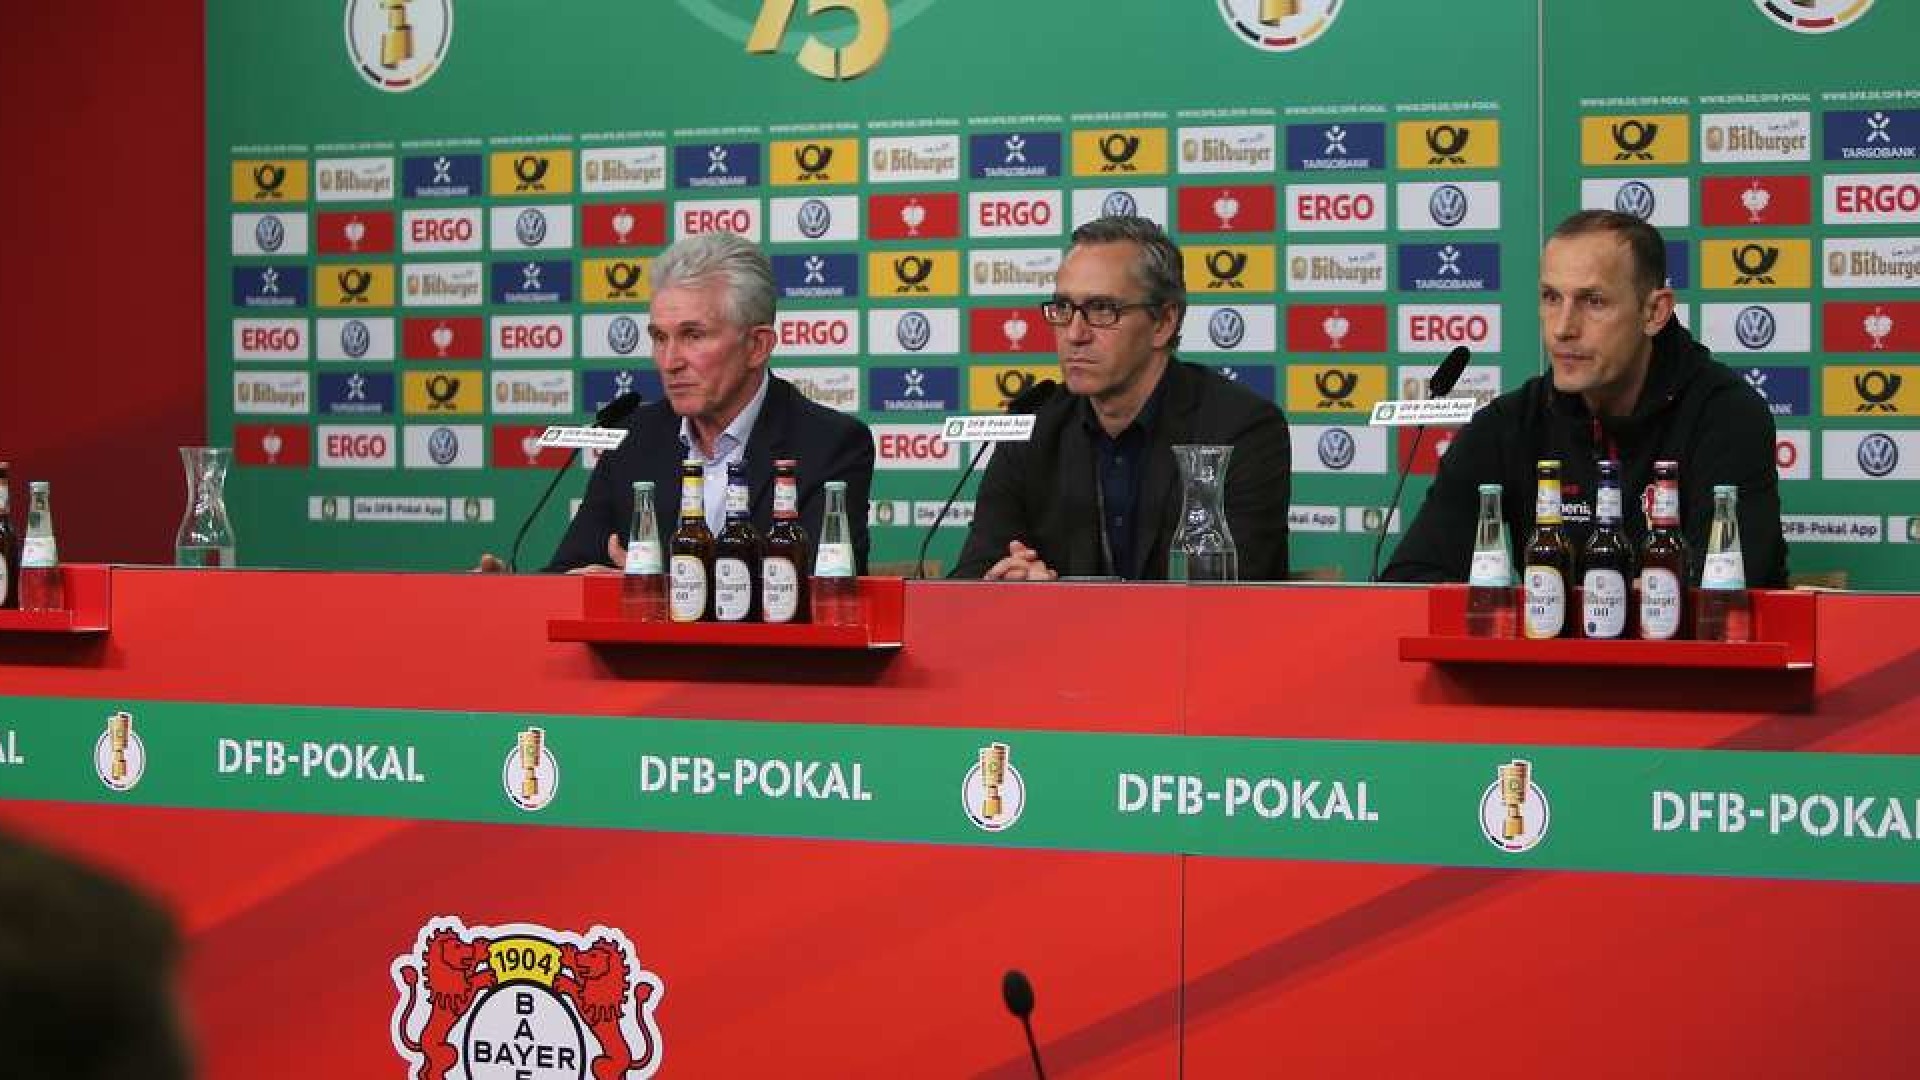 Die Statements von Heiko Herrlich und Jupp Heynckes nach dem Pokal-Halbfinale